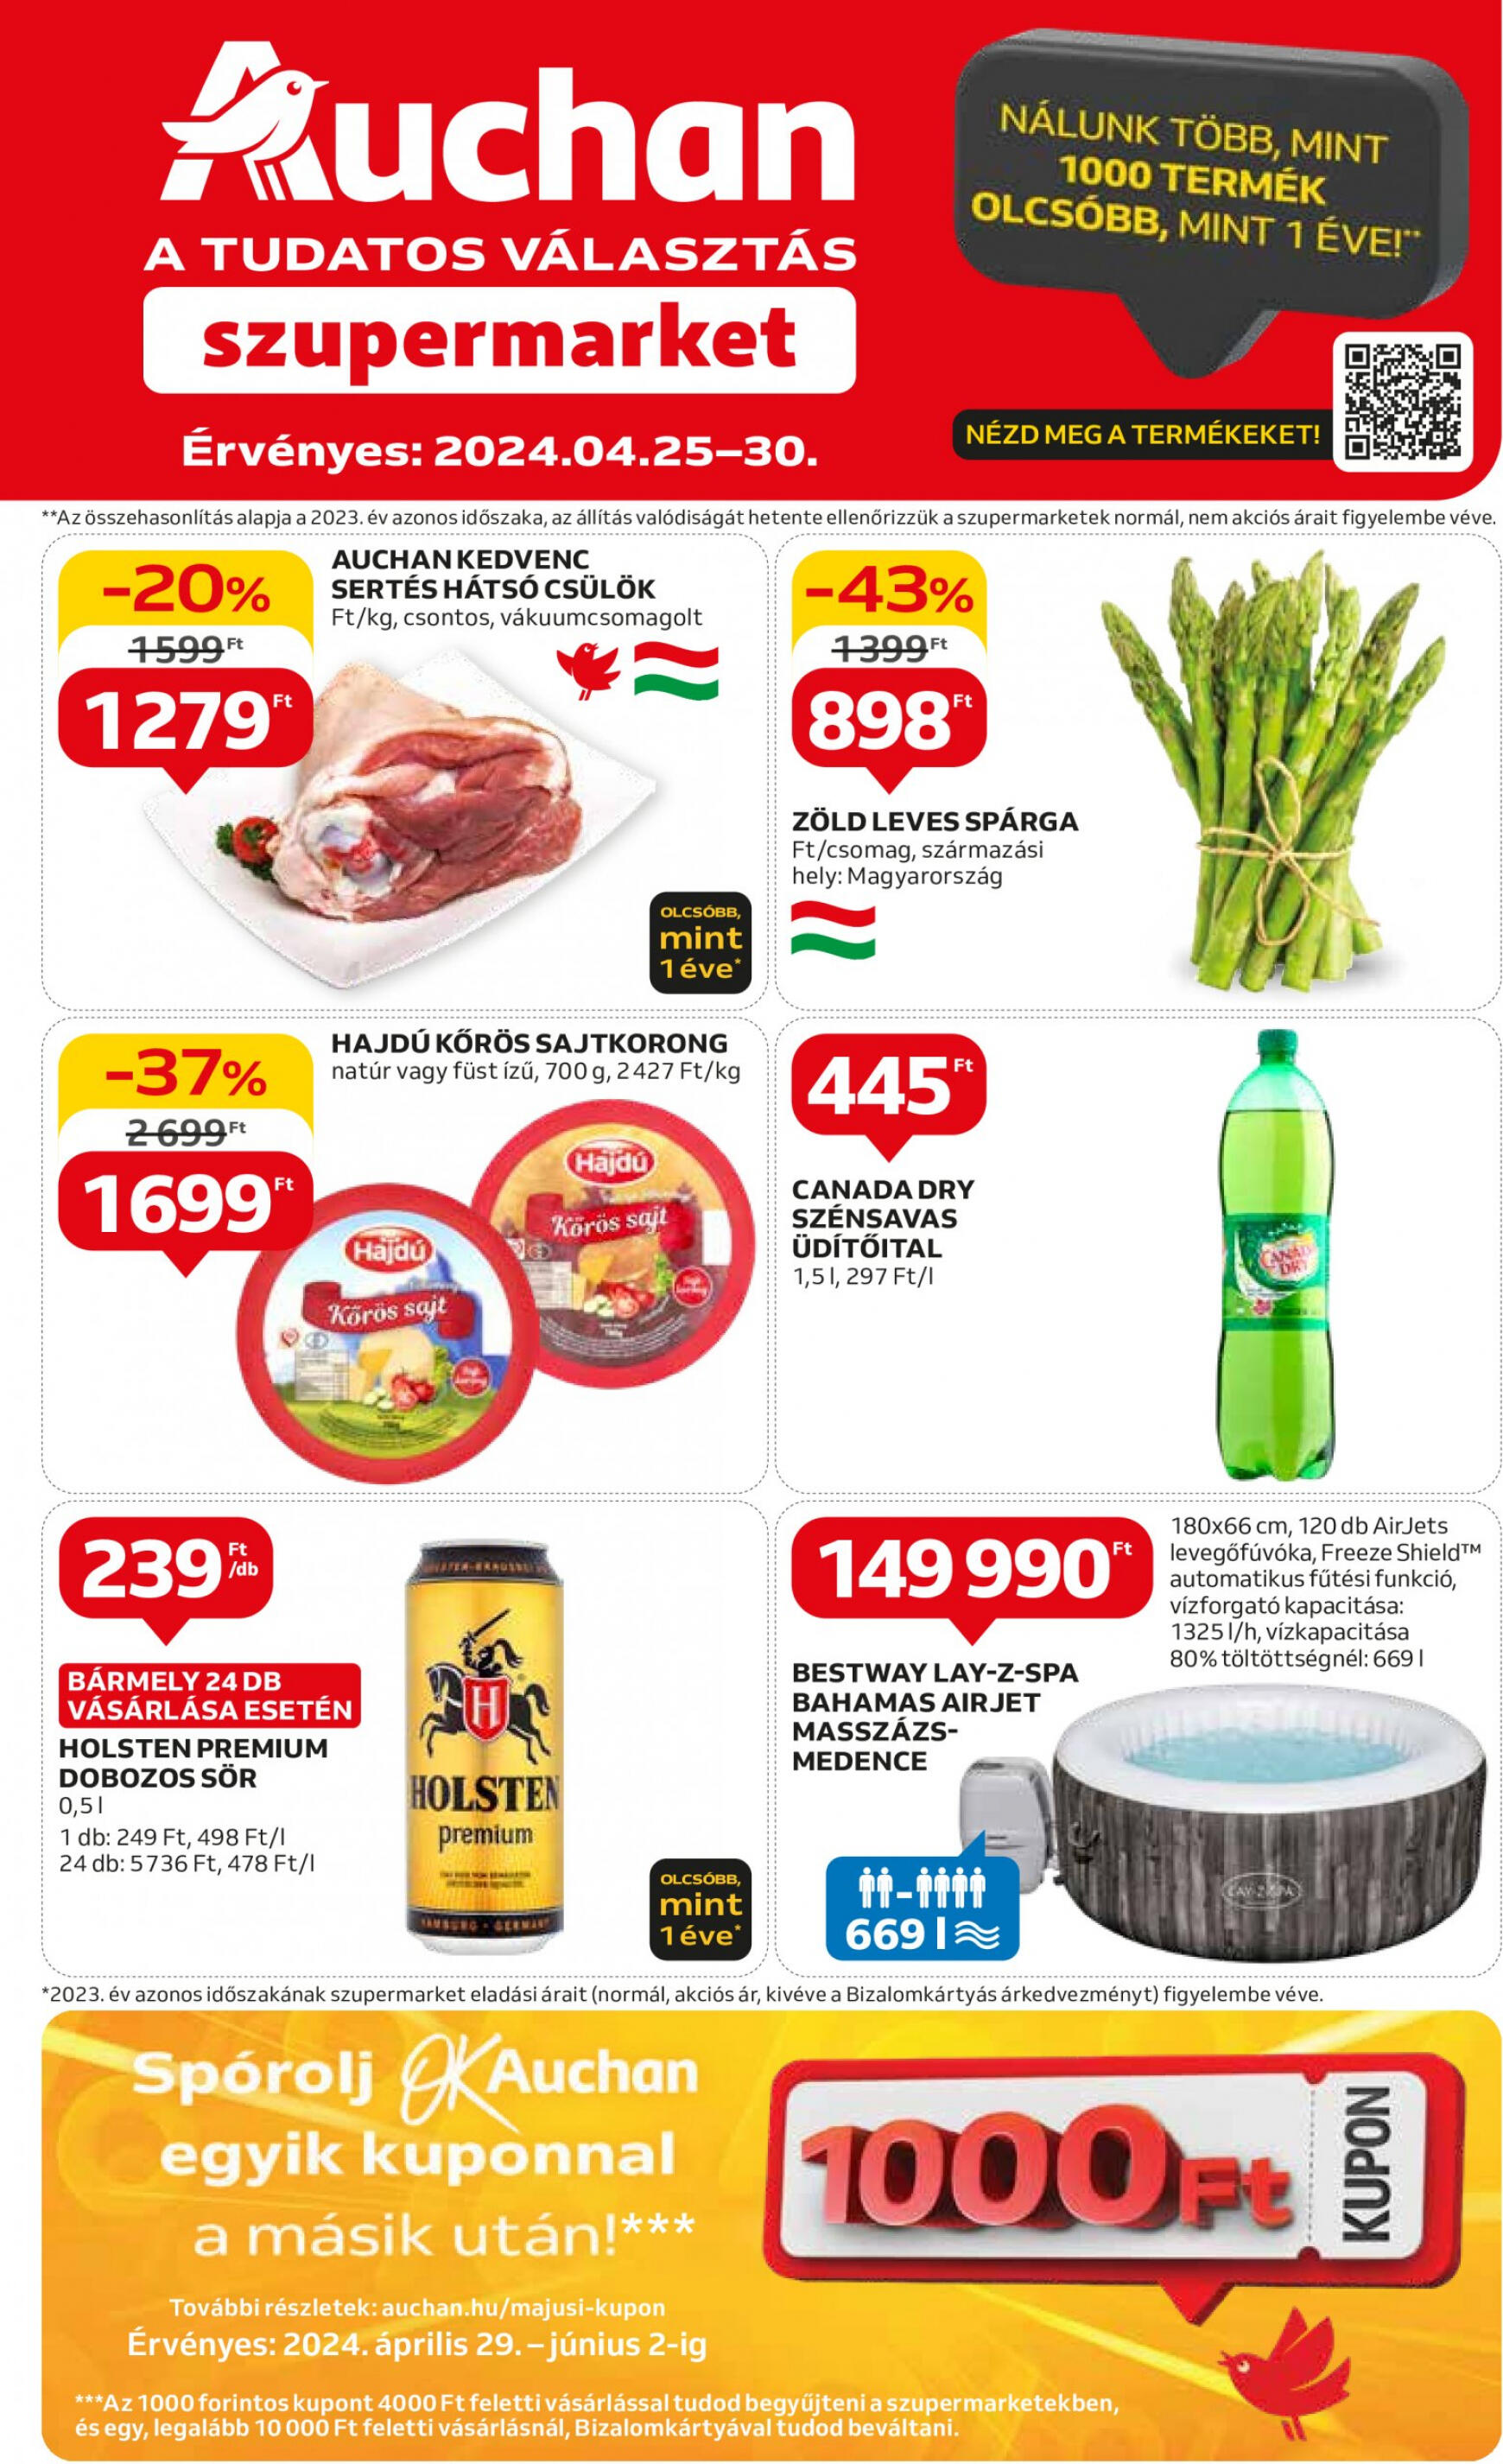 auchan - Aktuális újság Auchan szupermarket 04.25. - 05.30.